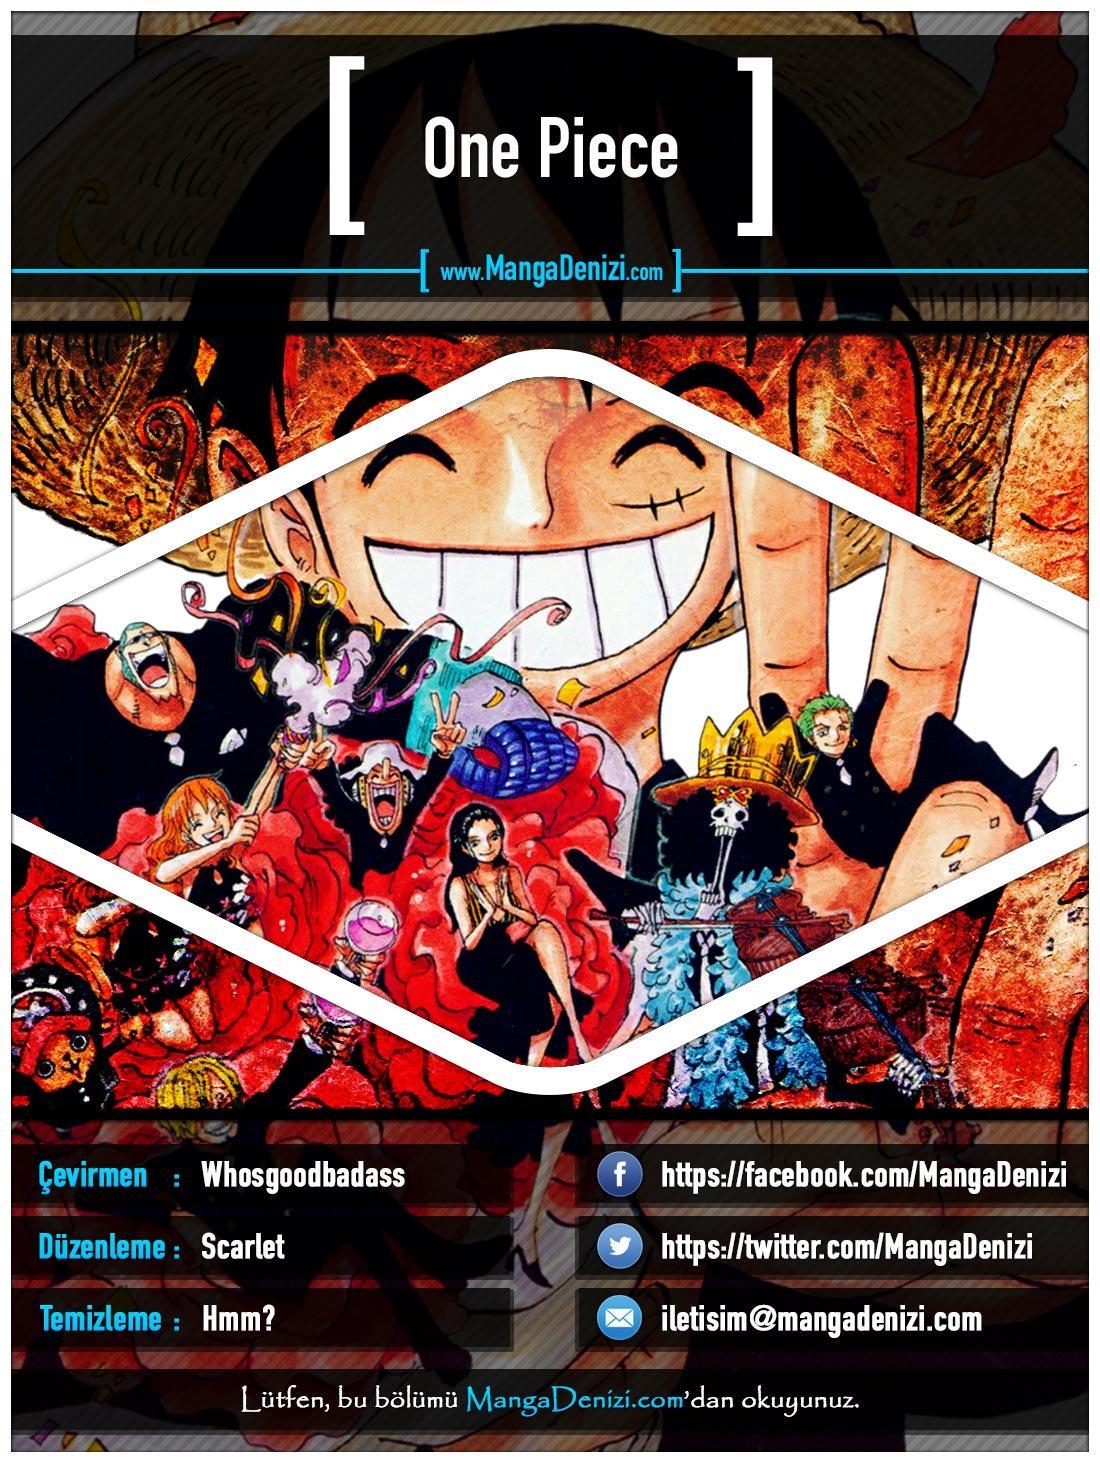 One Piece [Renkli] mangasının 0649 bölümünün 1. sayfasını okuyorsunuz.